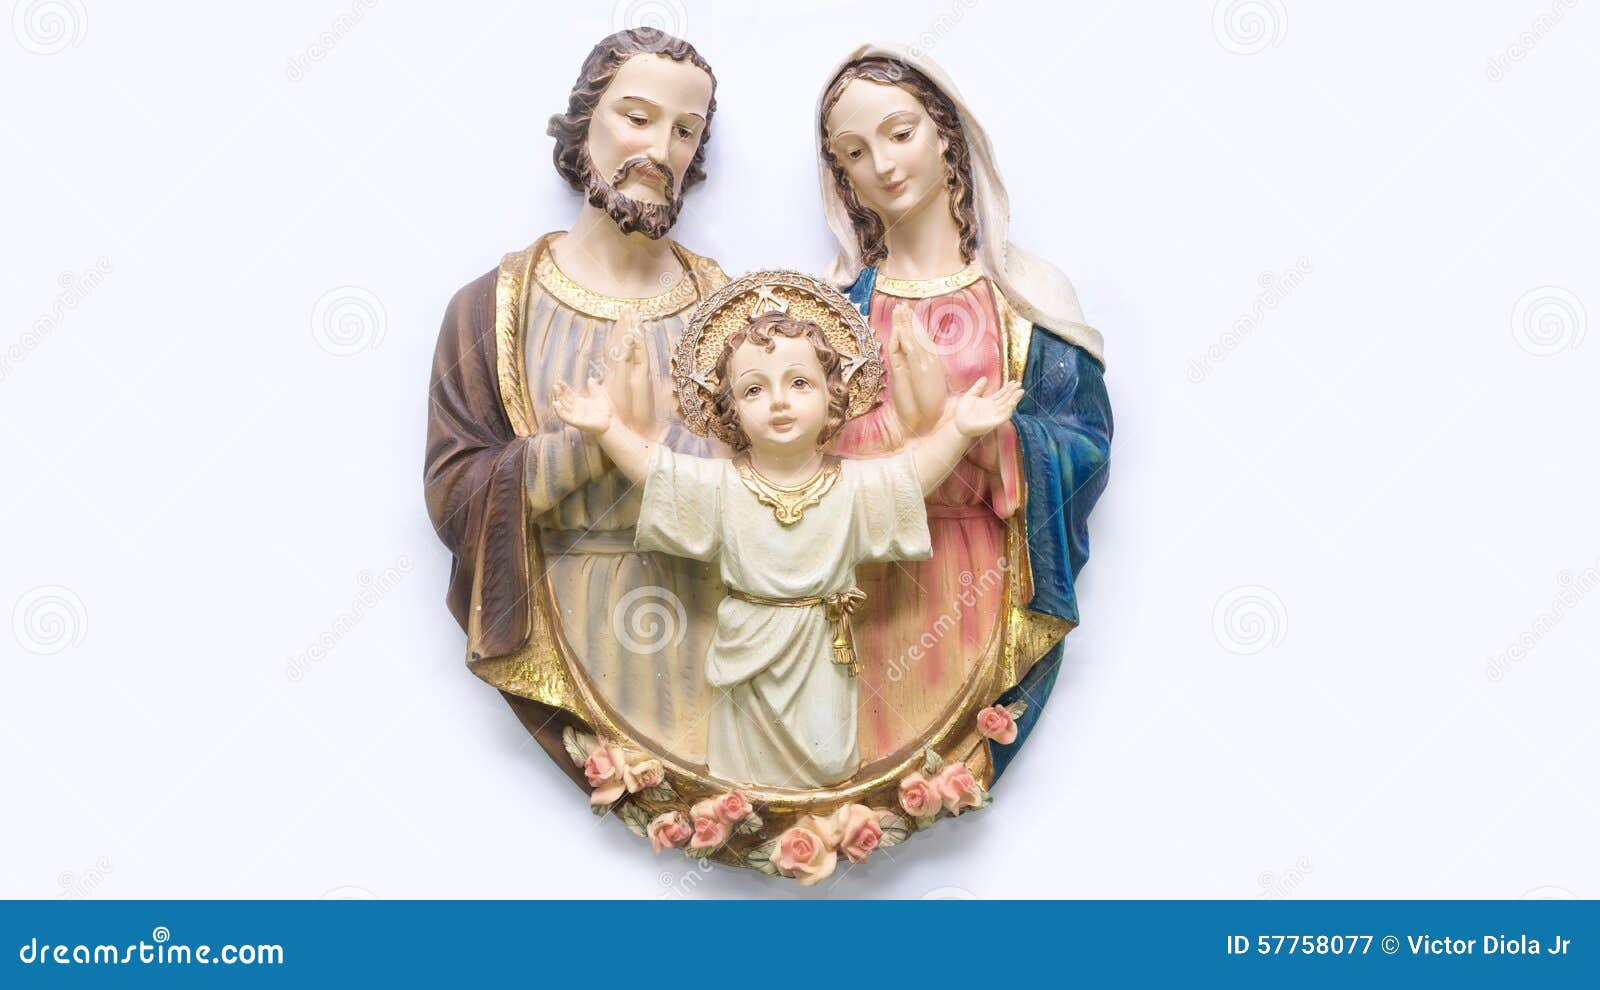 free clip art holy family of jesus mary and joseph - photo #28